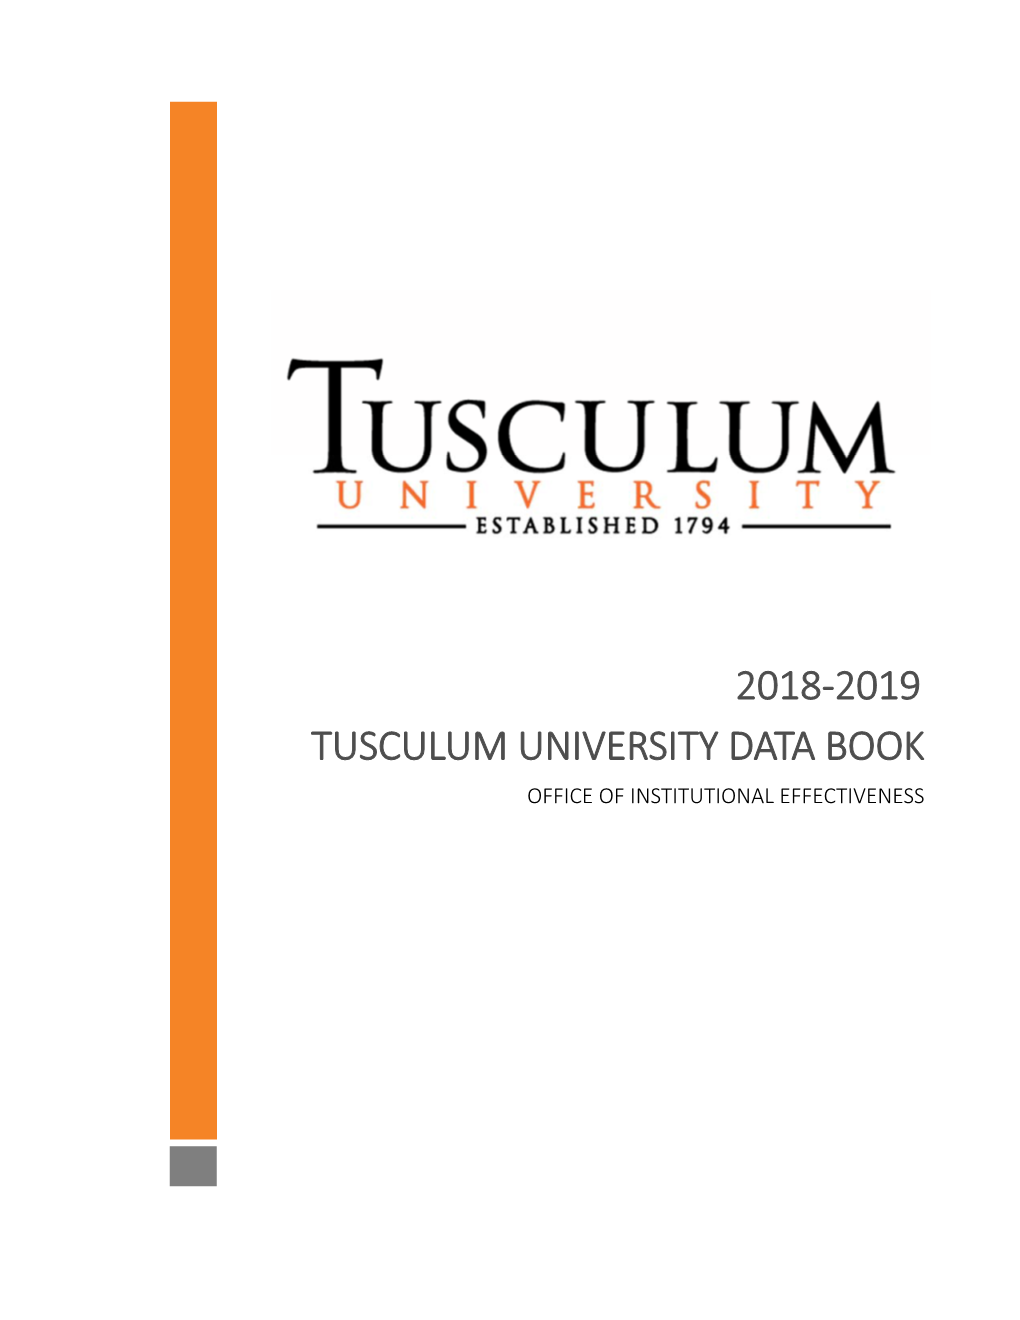 Tusculum University Data Book 2018-2019